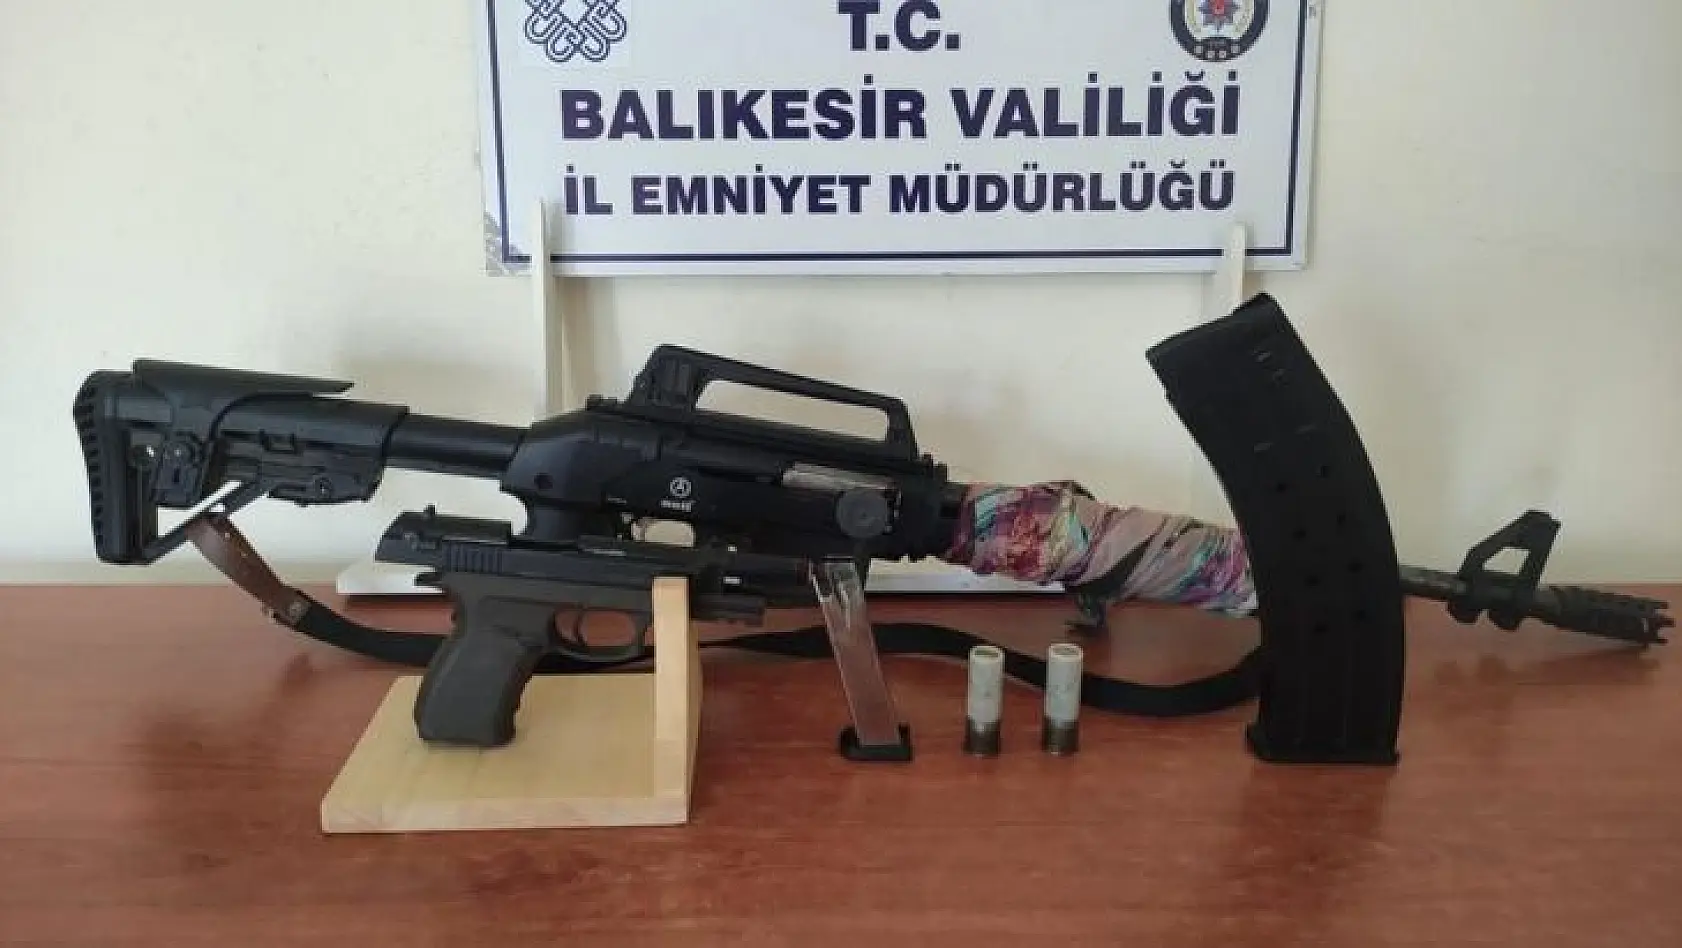 Balıkesir'de polisten asayiş ve kaçak akaryakıt operasyonu